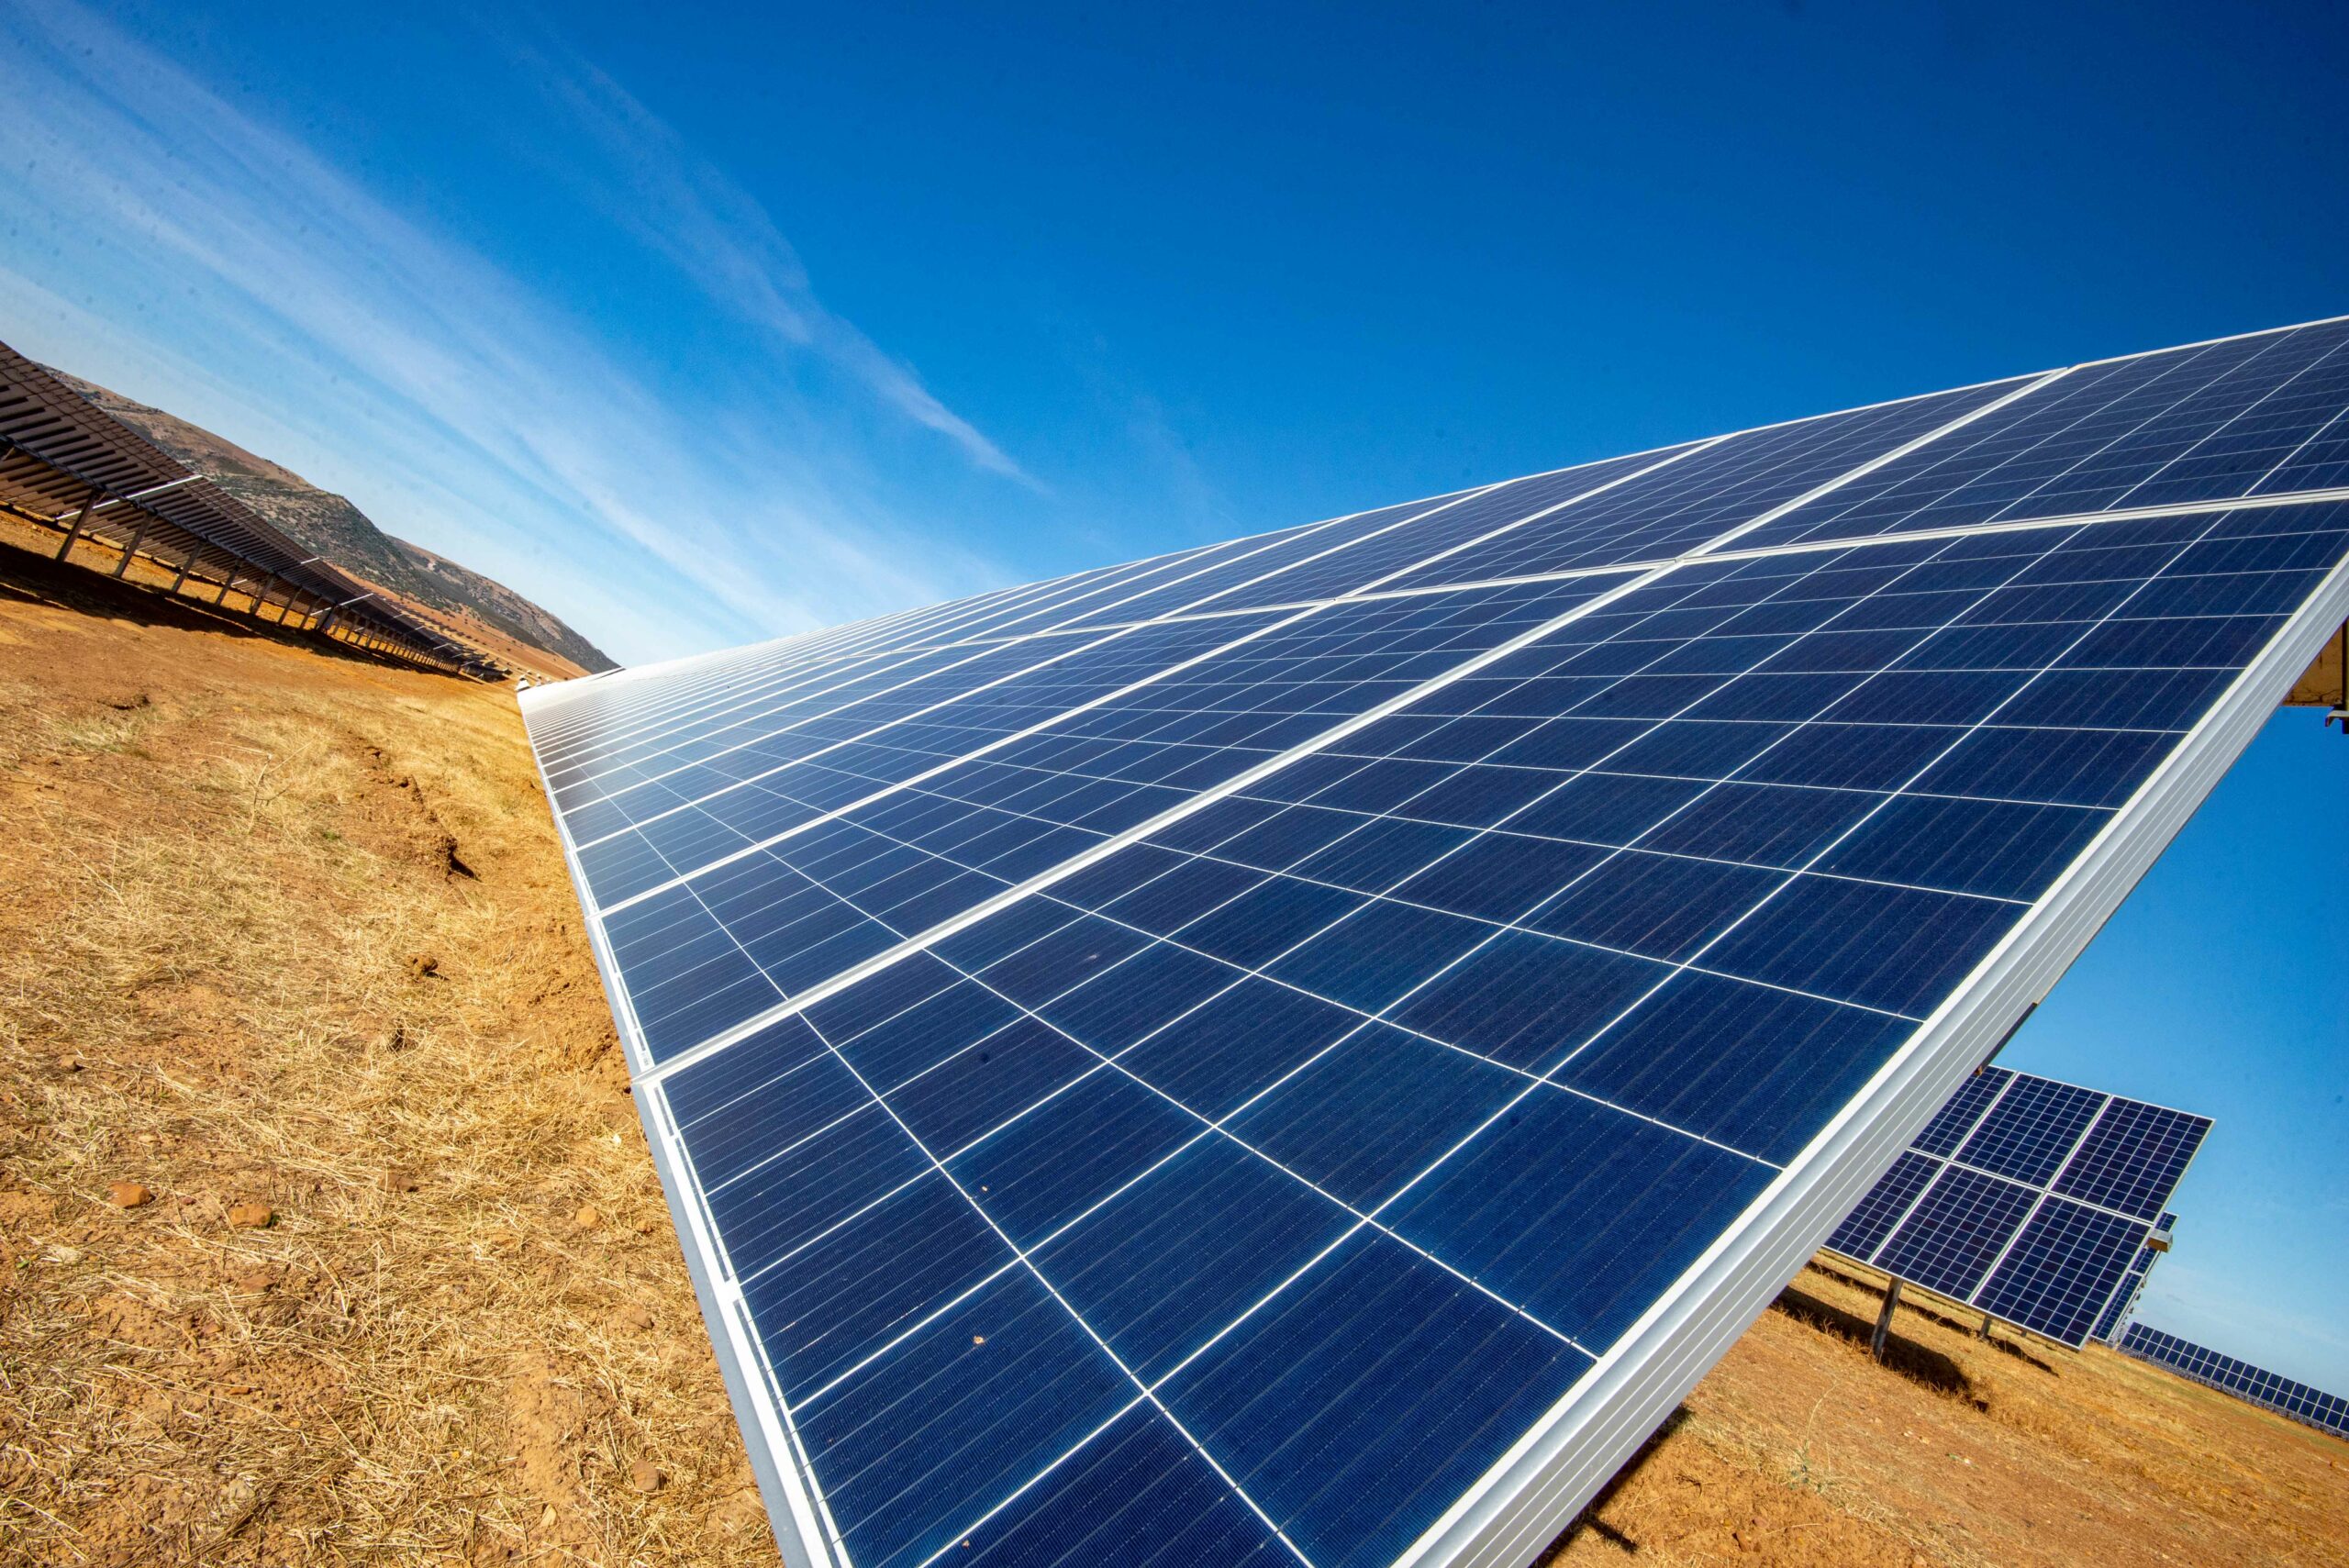 Planta solar fotovoltaica de 100kW en techo de cubierta industrial. (Sant  Pere Pescador-Girona), Ingeniería especializada en el sector energético.